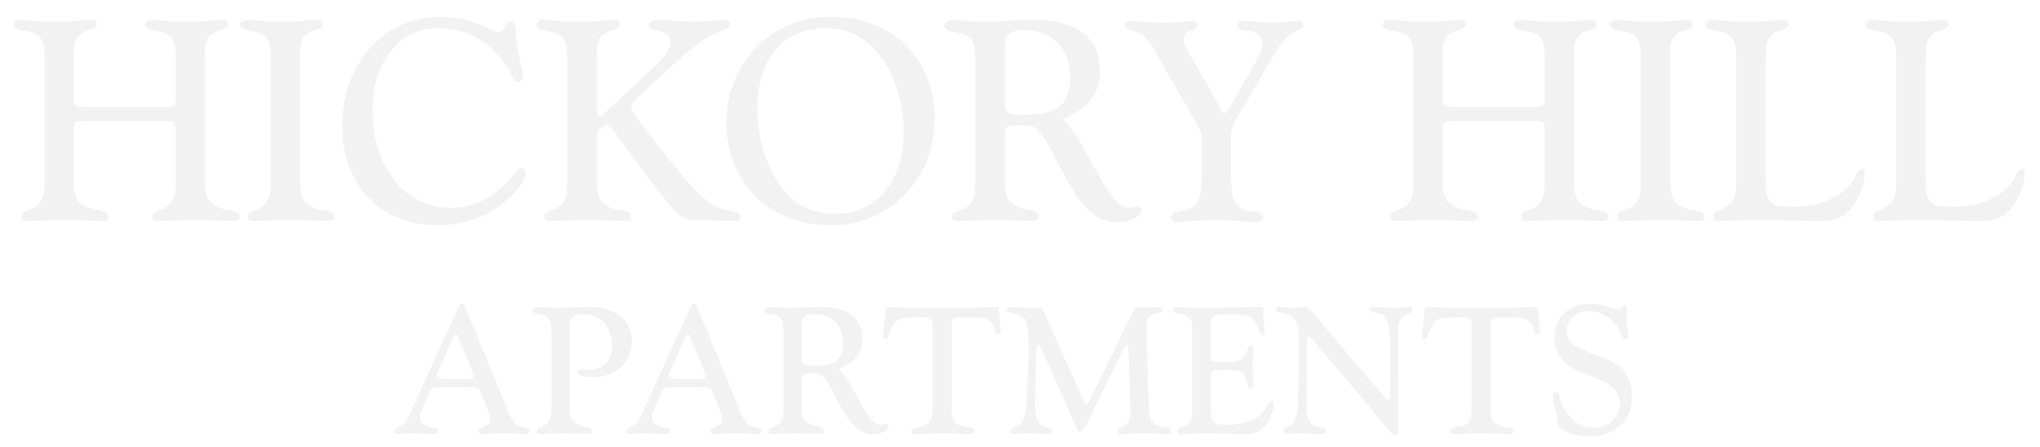 Hickory Hill Apartments Logo